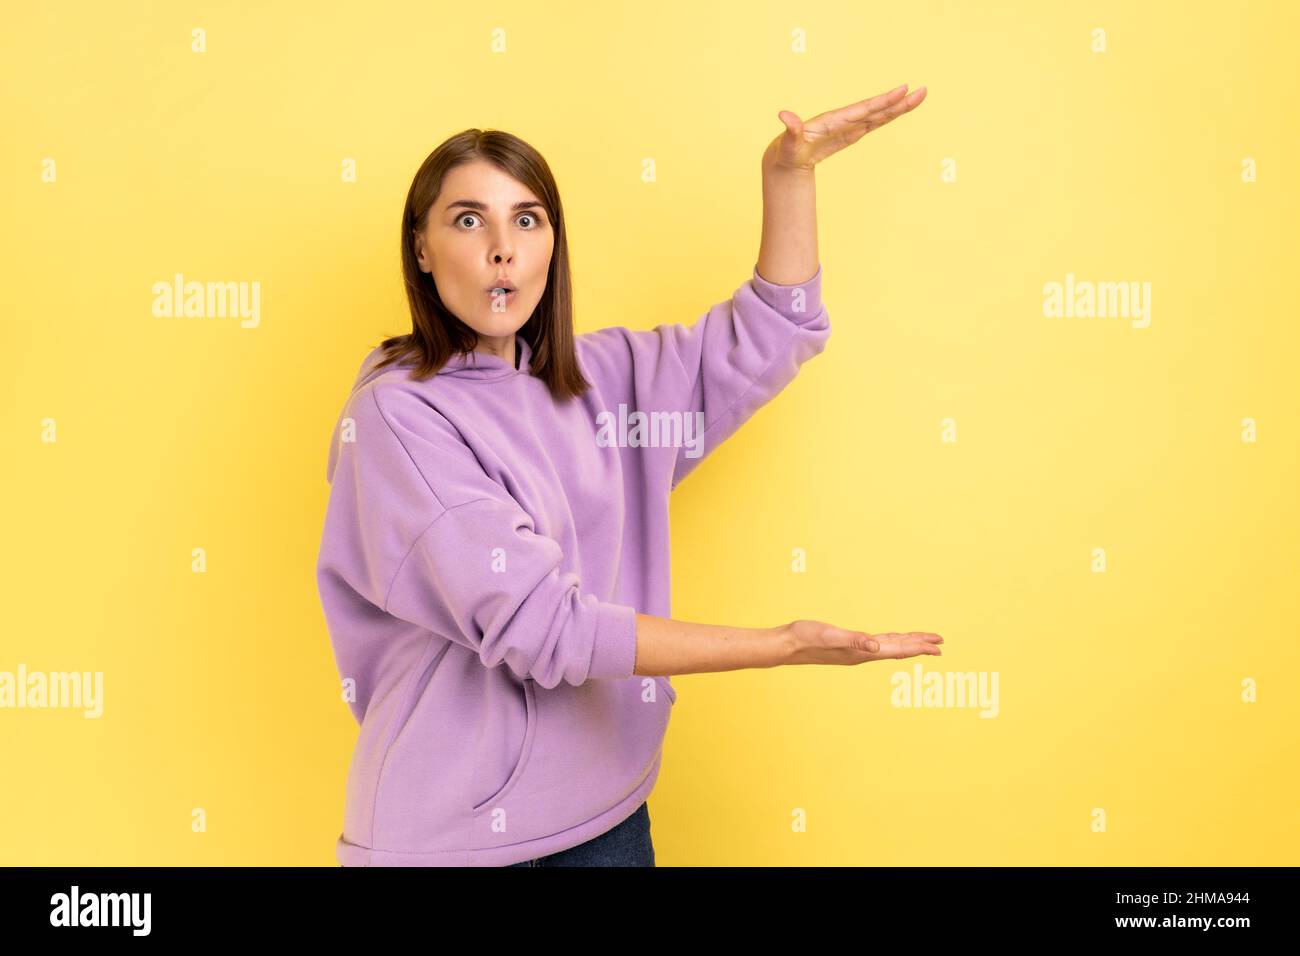 Porträt einer verblüfften, überraschten Frau, die einen Kopierraum zwischen den Händen präsentiert, einen leeren Platz für kommerzielle Texte hält und einen violetten Hoodie trägt. Innenaufnahme des Studios isoliert auf gelbem Hintergrund. Stockfoto